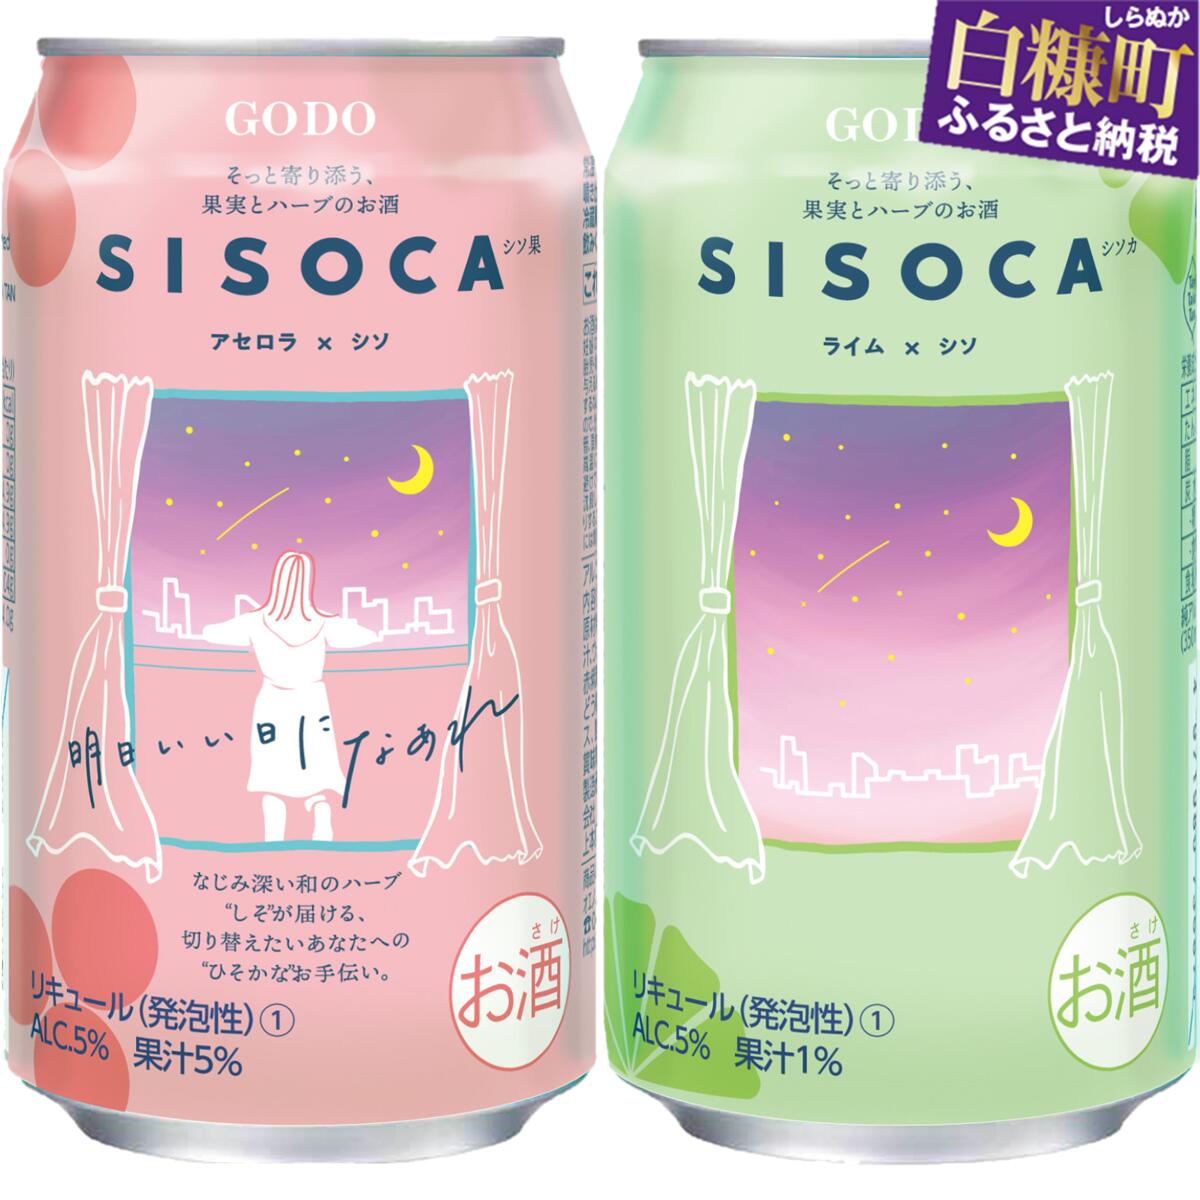 「SISOCA アセロラ×シソ」×「SISOCA ライム×シソ」【350ml×各24缶 計48缶】